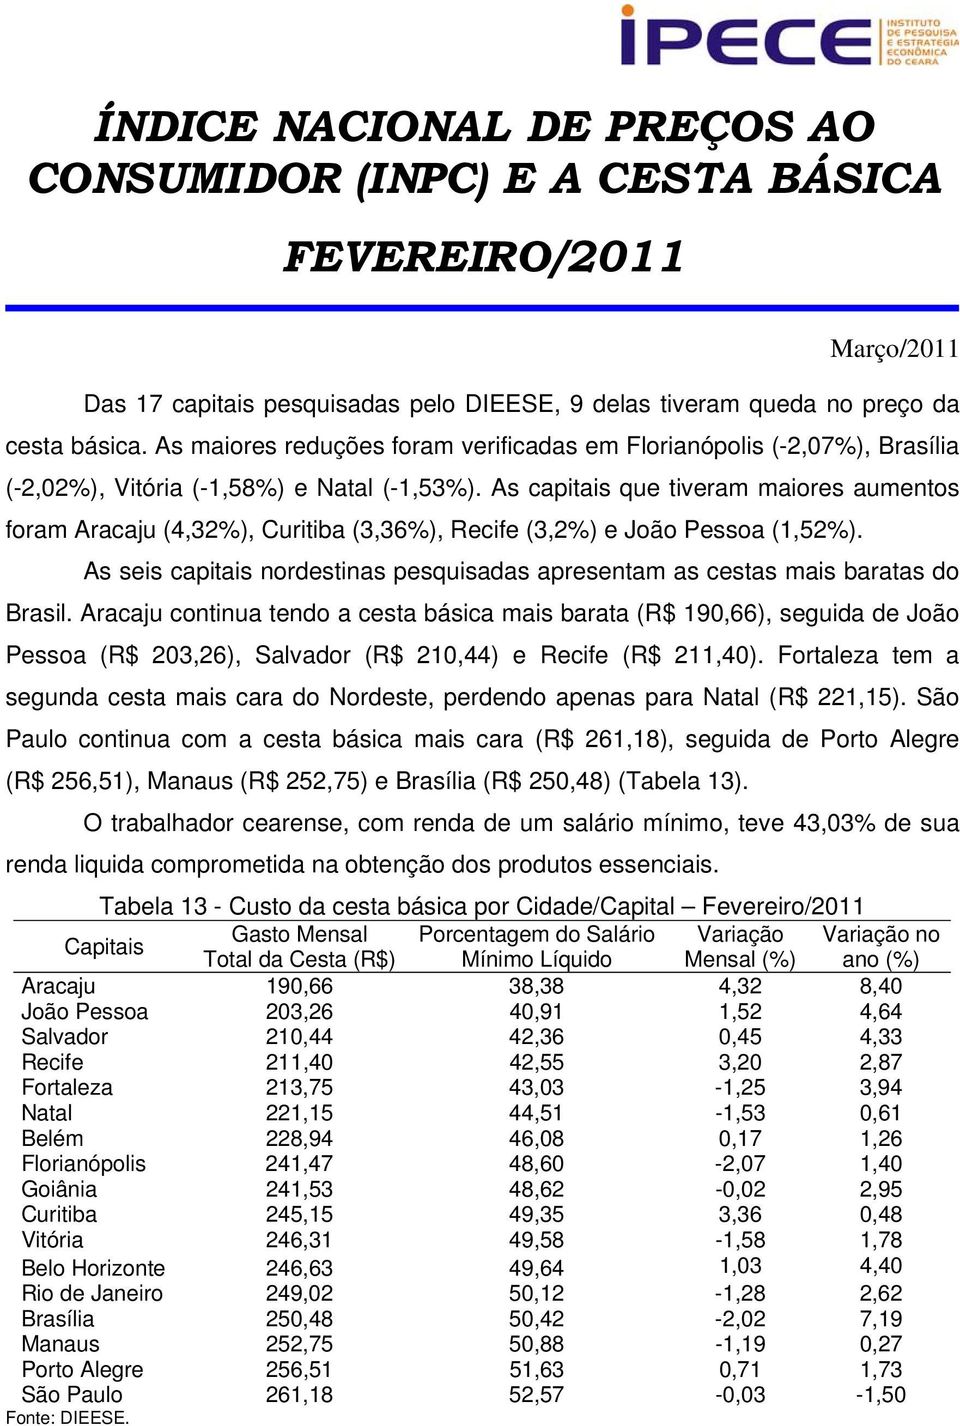 As capitais que tiveram maiores aumentos foram Aracaju (4,32%), Curitiba (3,36%), Recife (3,2%) e João Pessoa (1,52%).